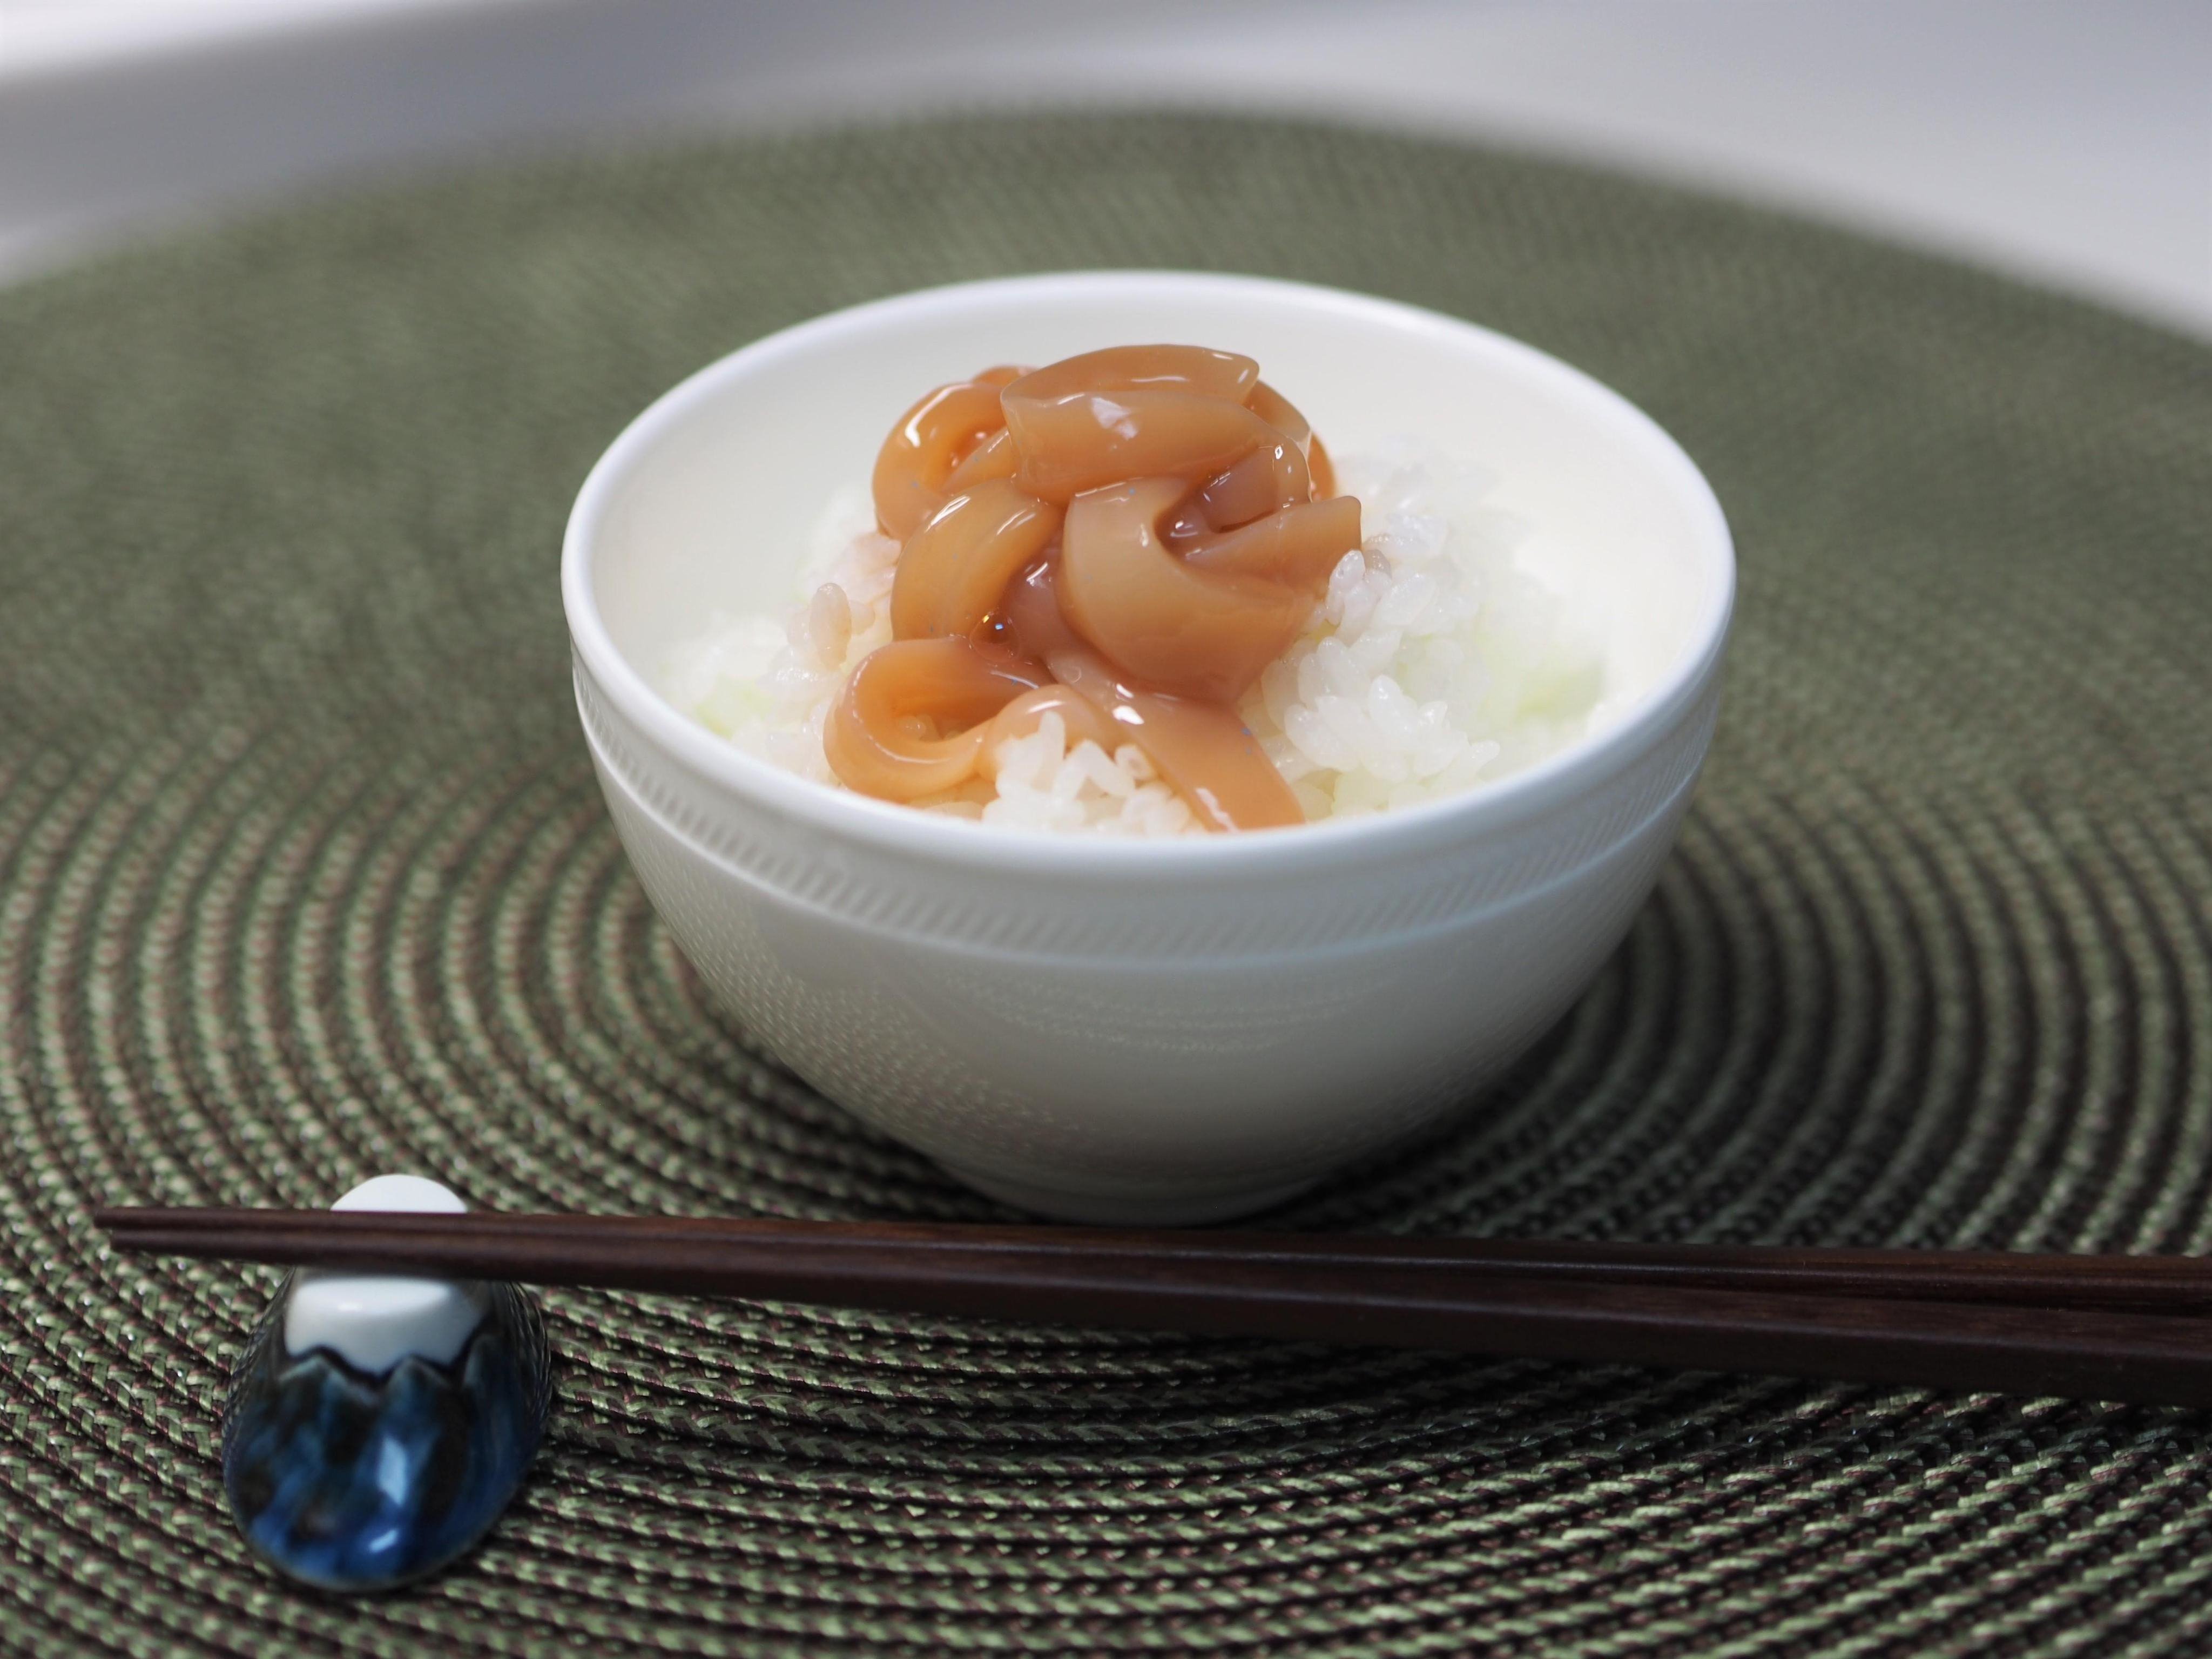 自家製イカの塩辛のレシピ 作り方 名田 緑 料理教室検索サイト クスパ